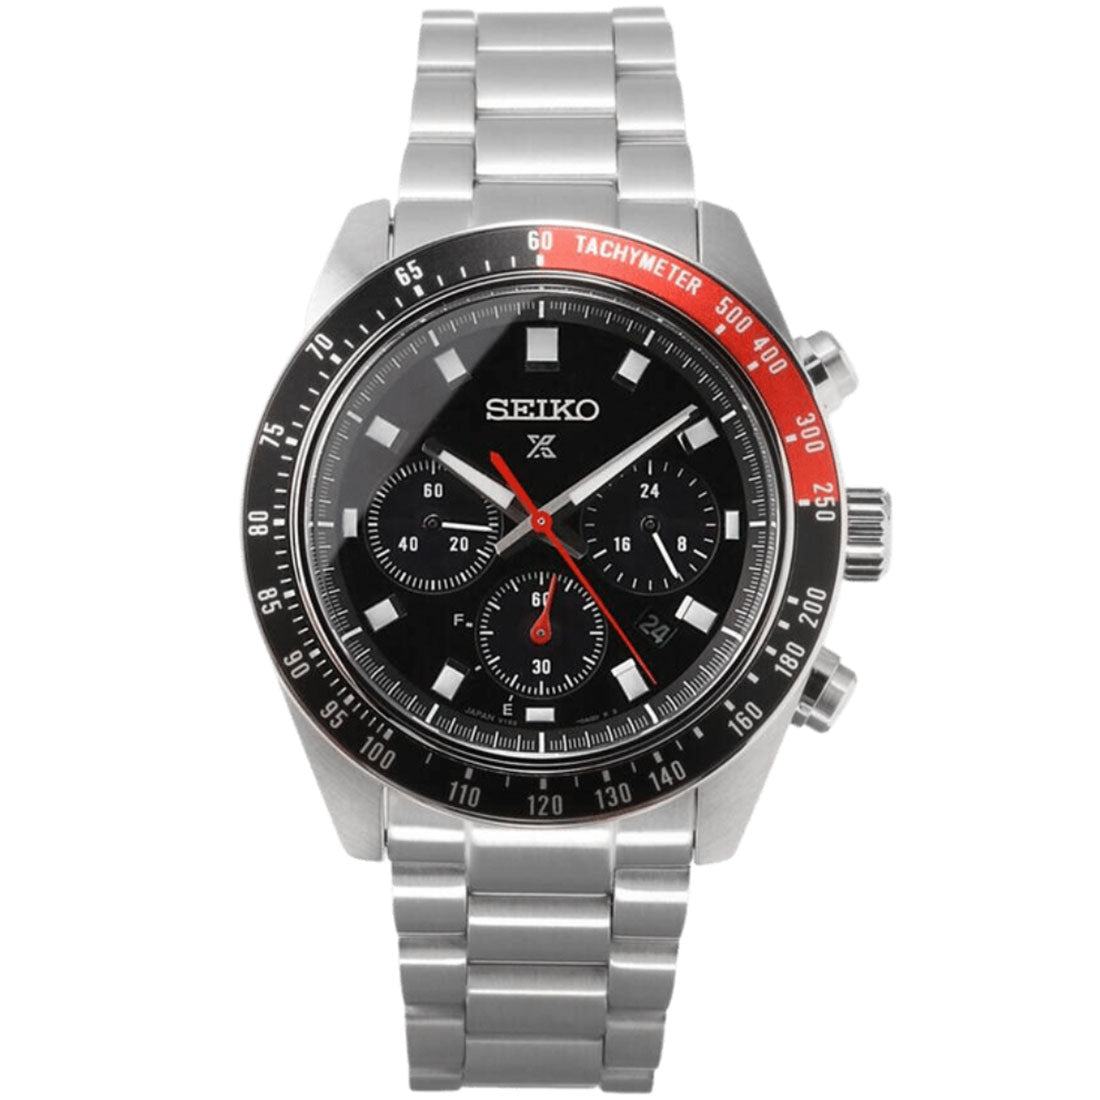 Seiko Prospex SpeedTimer SBDL099 Chronograph Solar Black Dial Watch -Seiko